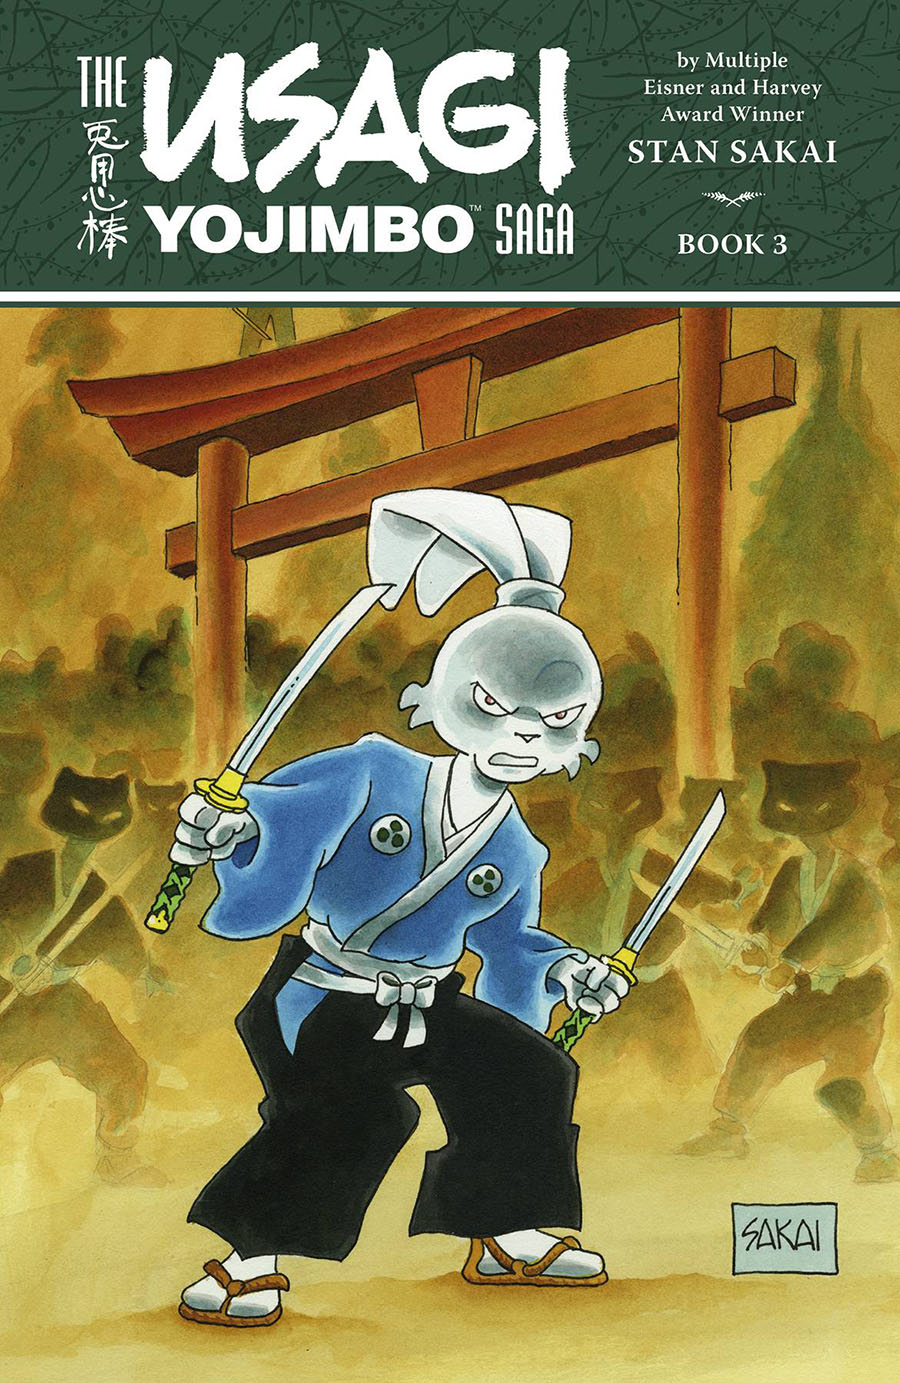 Usagi Yojimbo Saga Vol 3 TP 2nd Edition